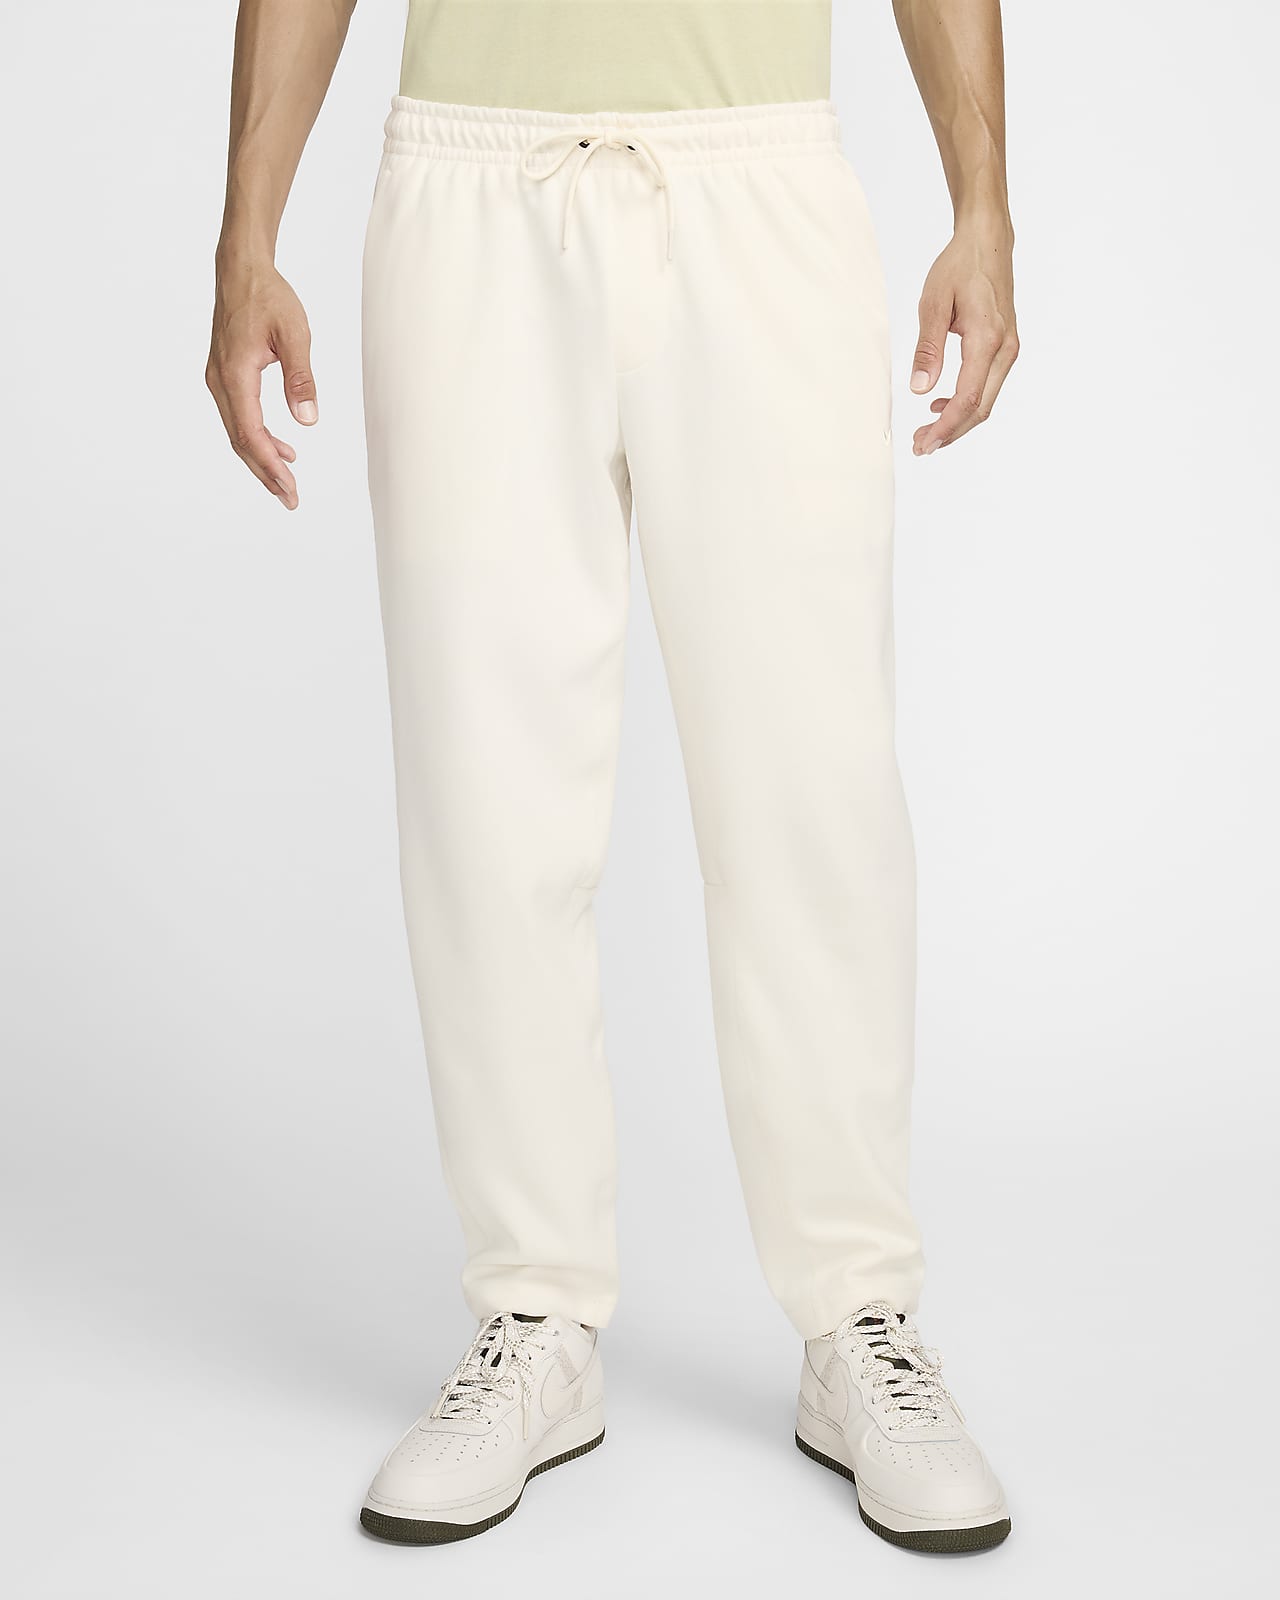 Pants Dri-FIT entallados versátiles con protección UV para hombre Nike Primary